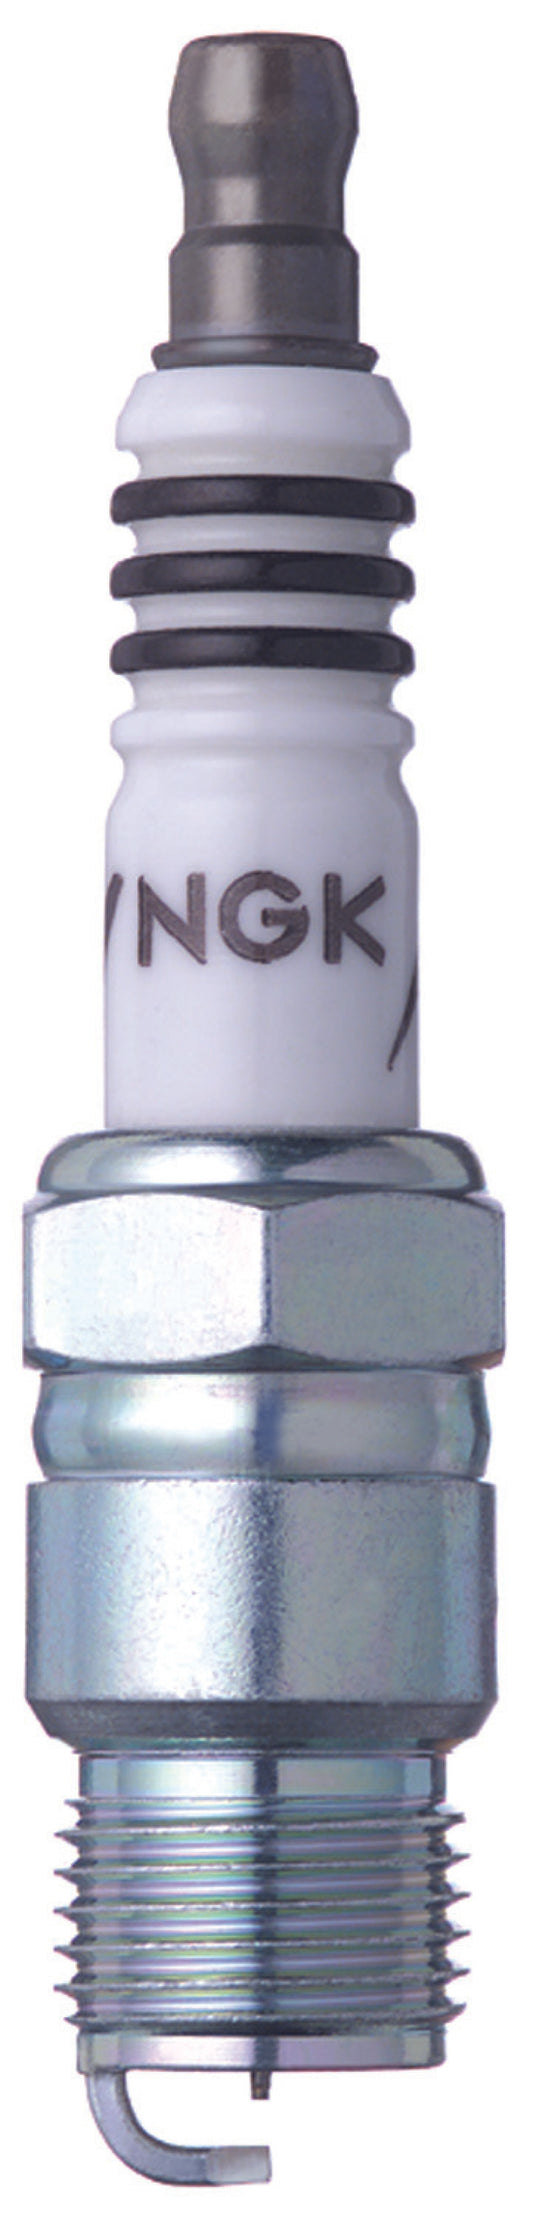 NGK Iridium IX Spark Plug Box of 4 (YR5IX)